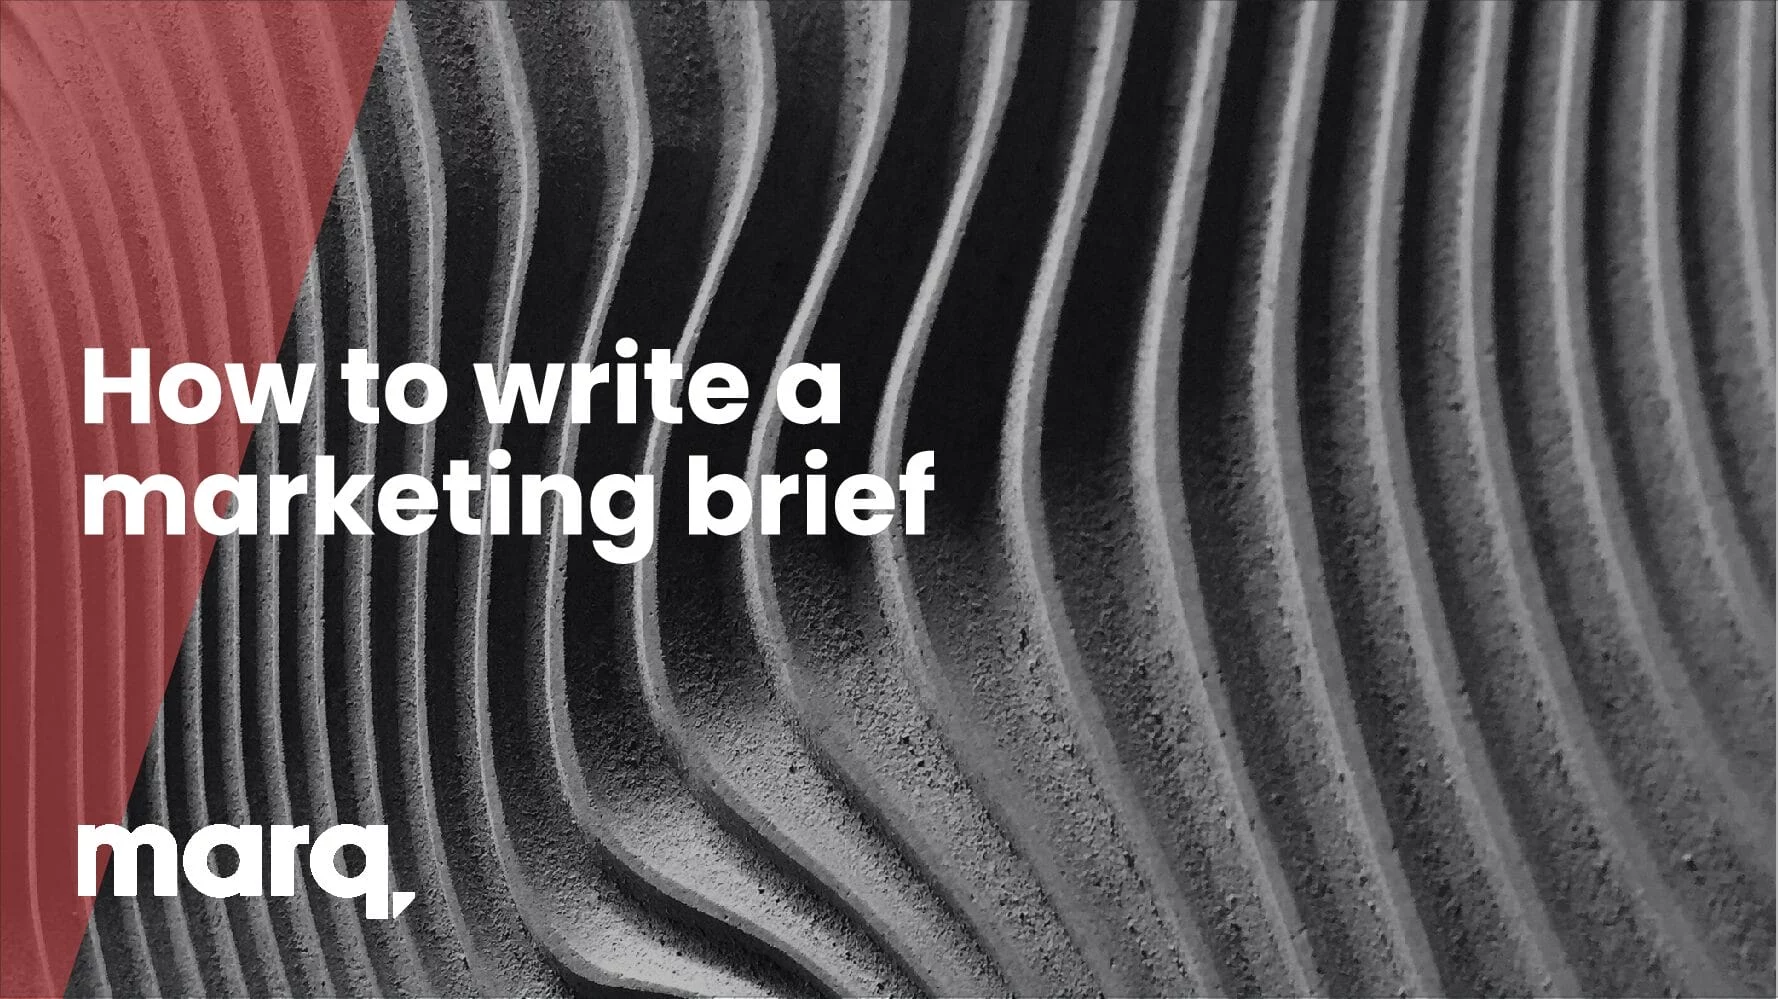 How to write a marketing brief